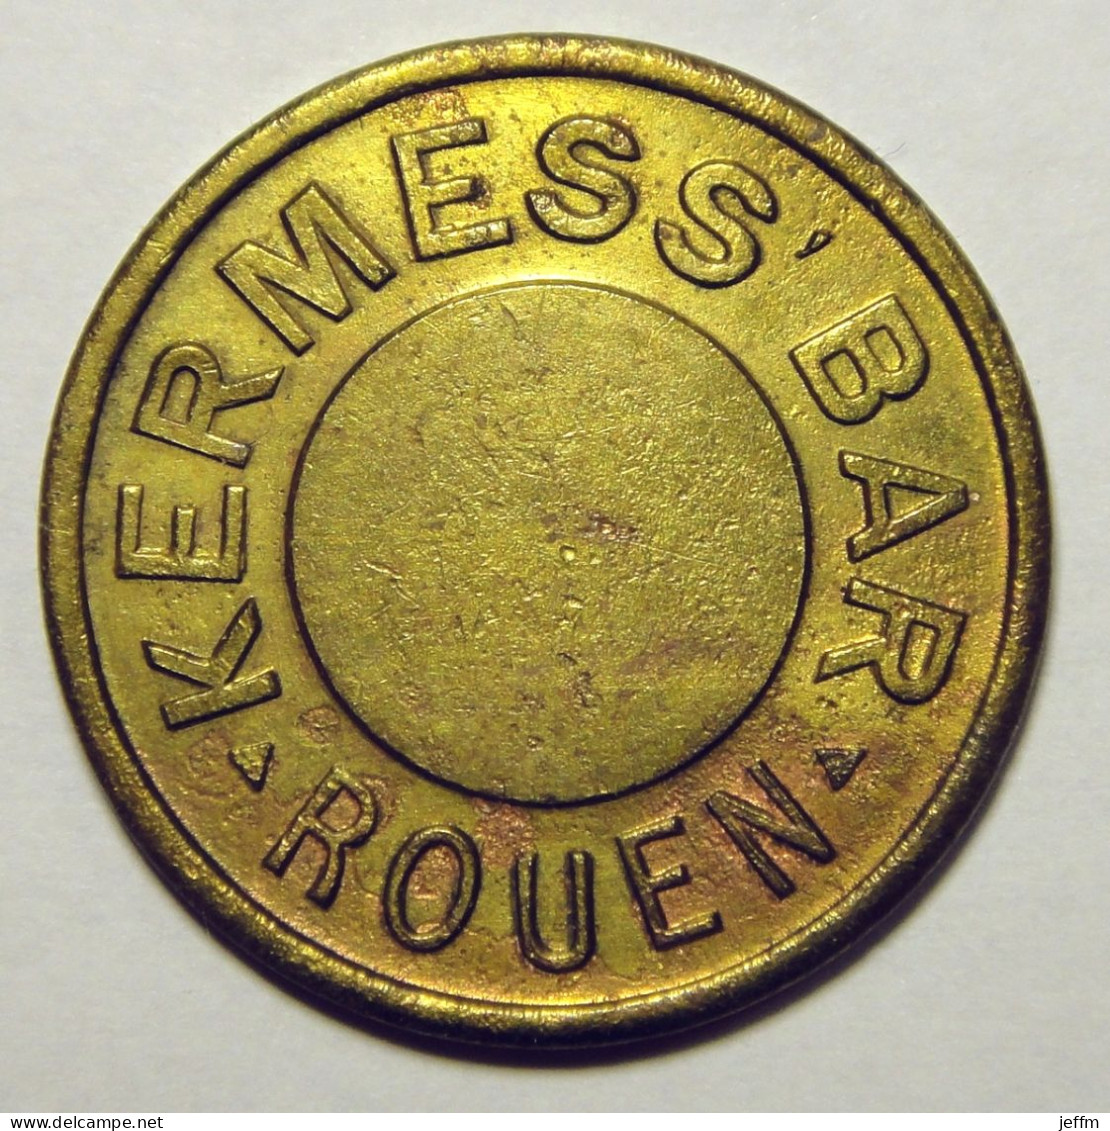 Rouen - Kermess Bar - Pour L'amusement - Monetary / Of Necessity